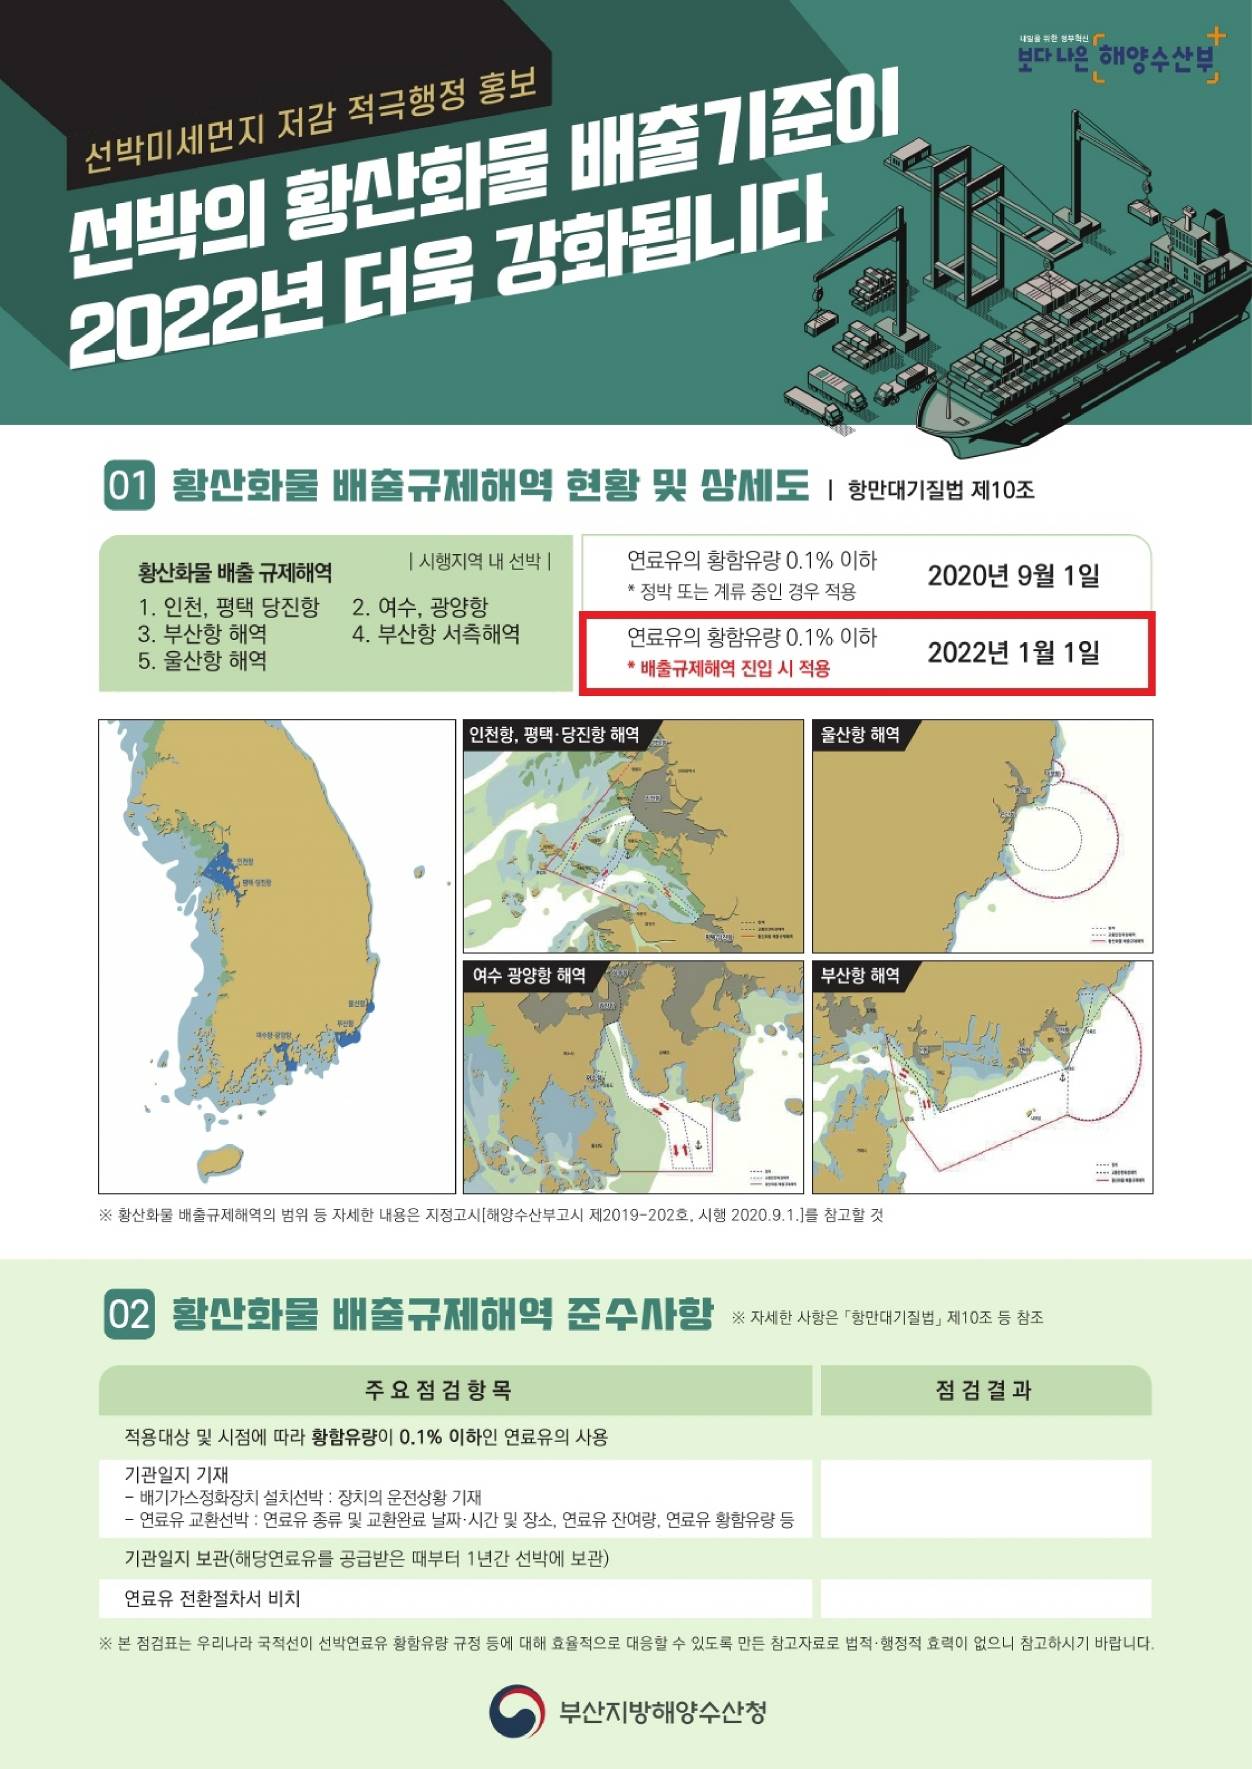 (한글)선박황산화물 홍보포스터